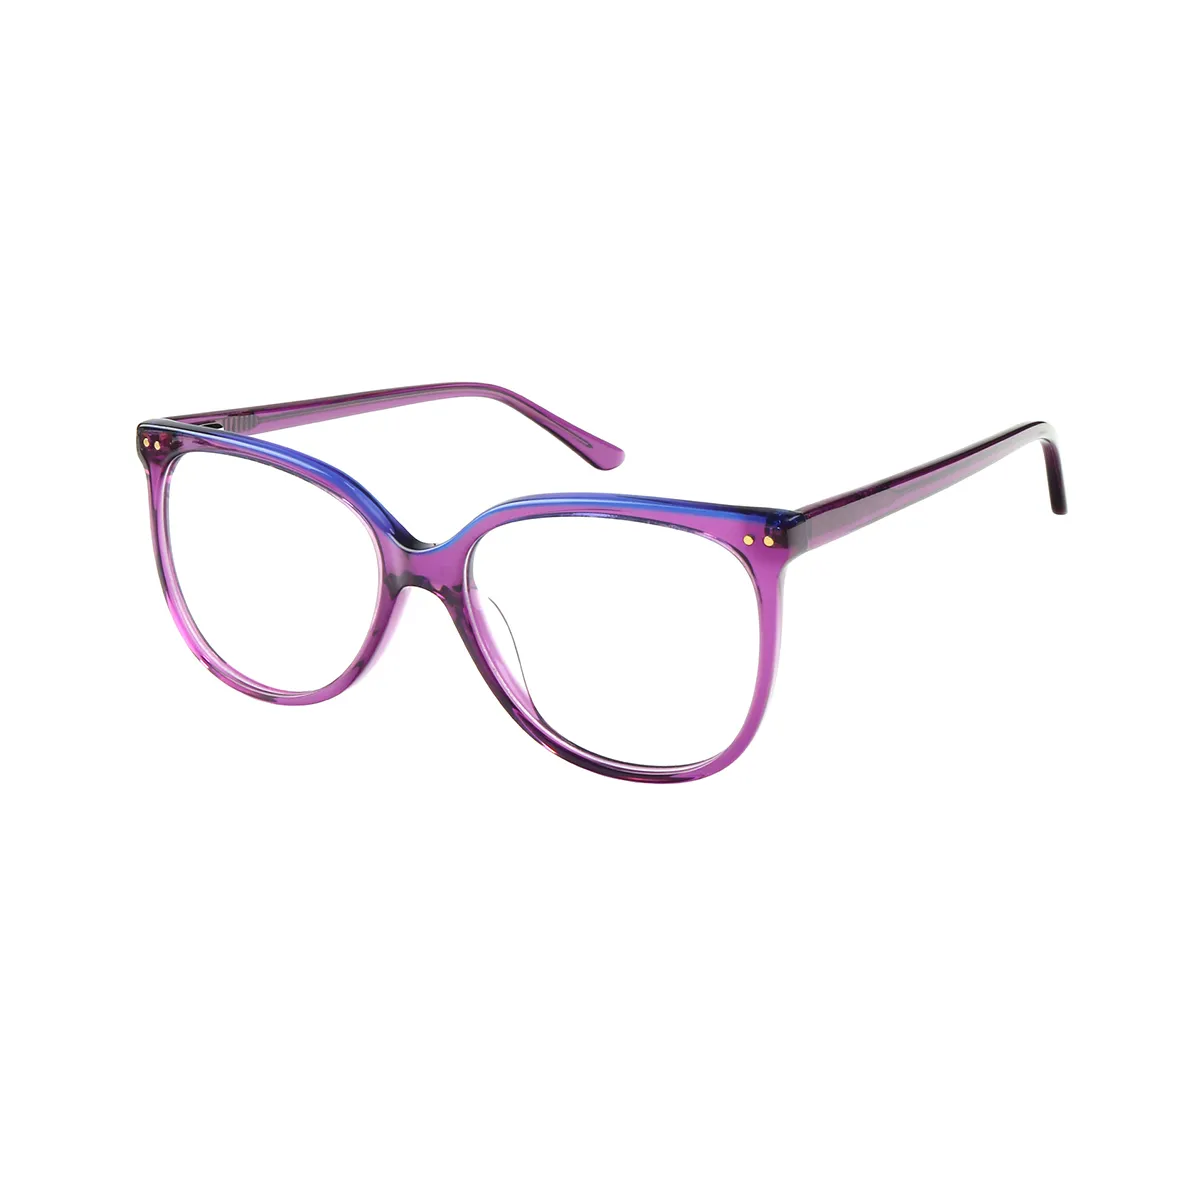 Tessie - Square Purple Glasses for Women